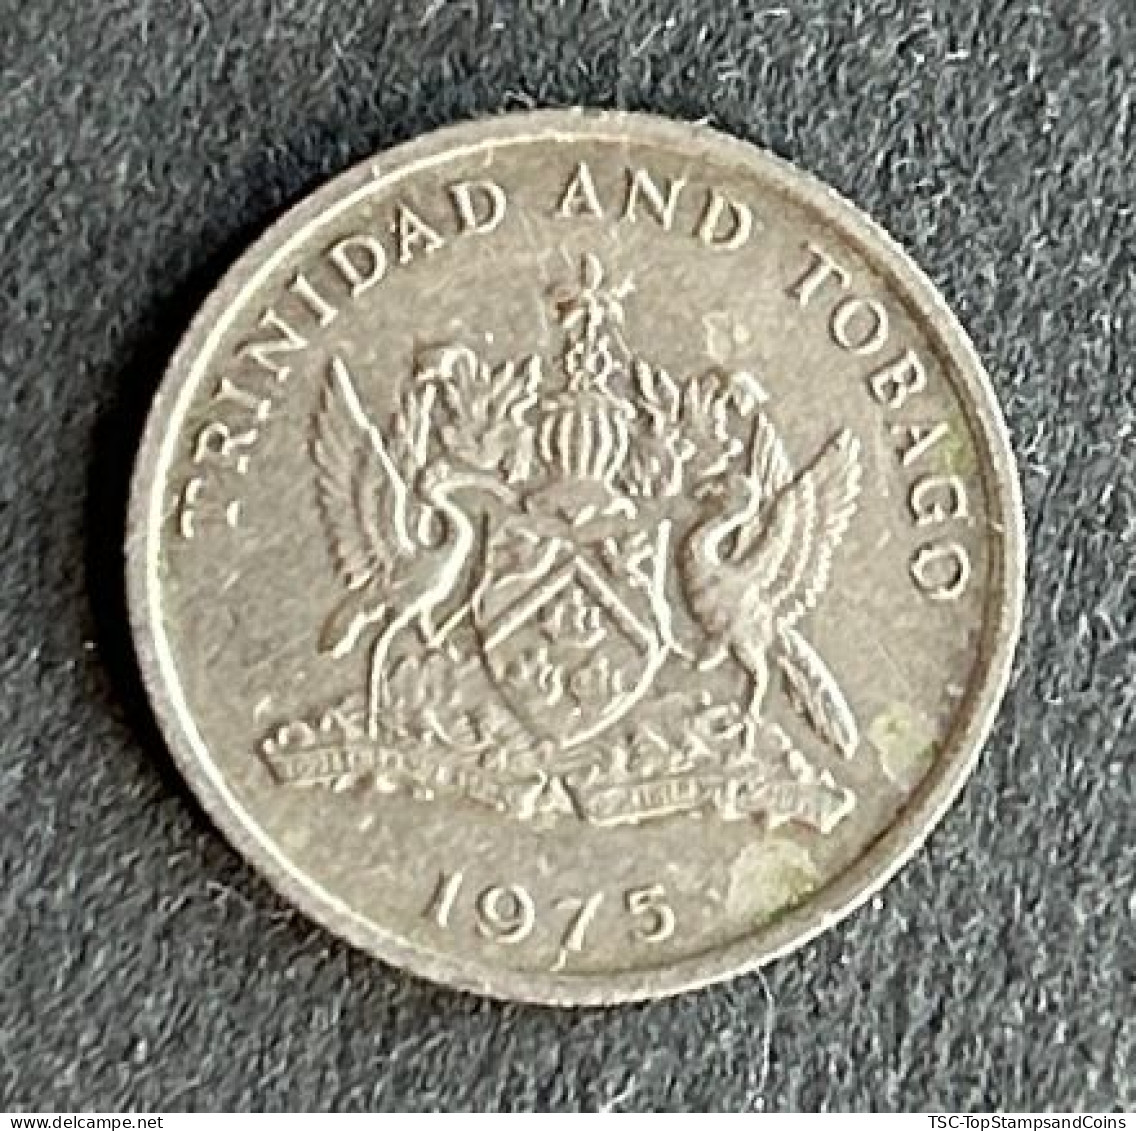 $$T&B500 - Elizabeth II Coat Of Arms / Flaming Hibiscus - 10 Cents Coin - Trinidad & Tobago - 1975 - Trinité & Tobago